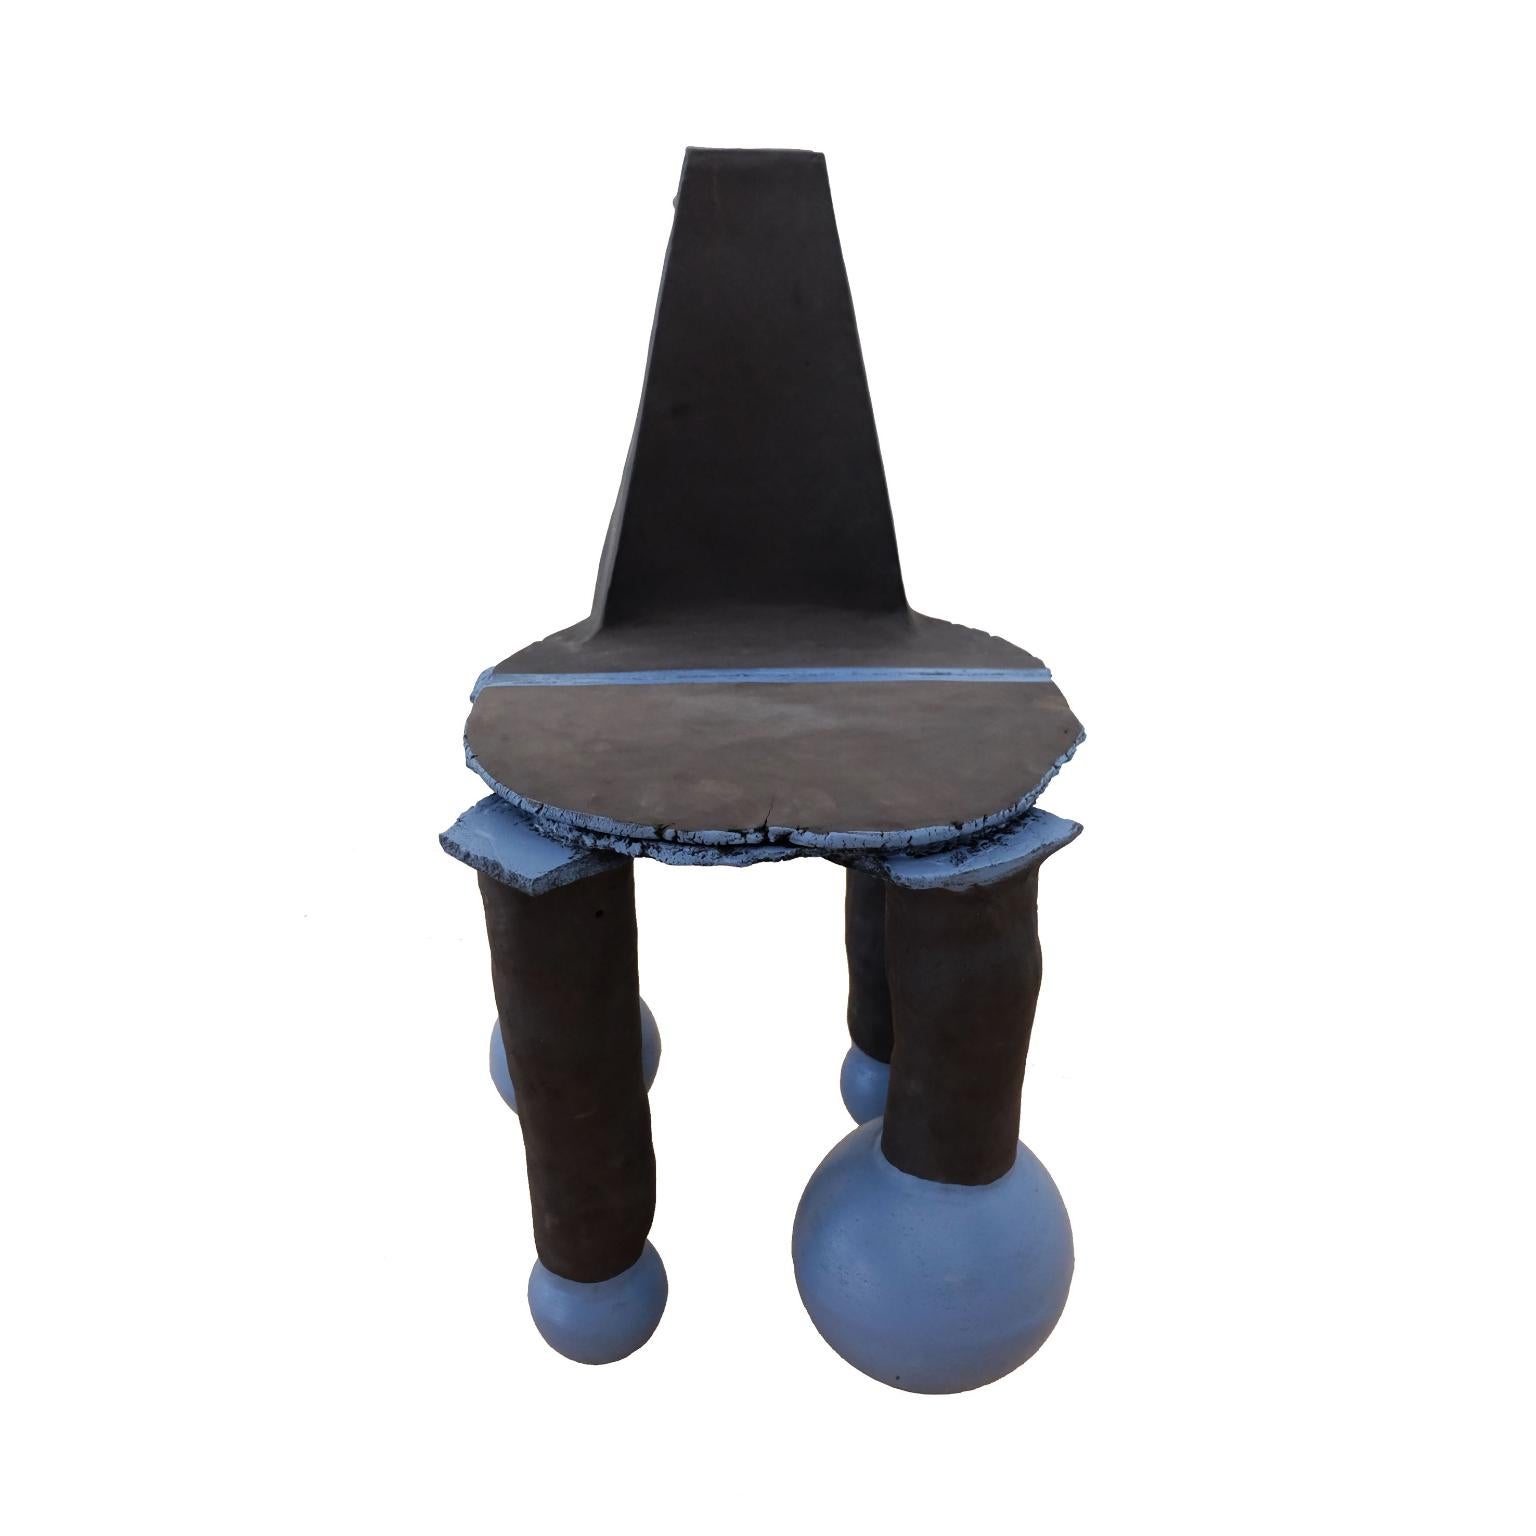 Einzigartiger Stuhl aus Erythro-Ton von Ia Kutateladze
Einzigartiges Stück
Abmessungen: B 45 x H 74 cm
MATERIALIEN: Roher schwarzer Ton

